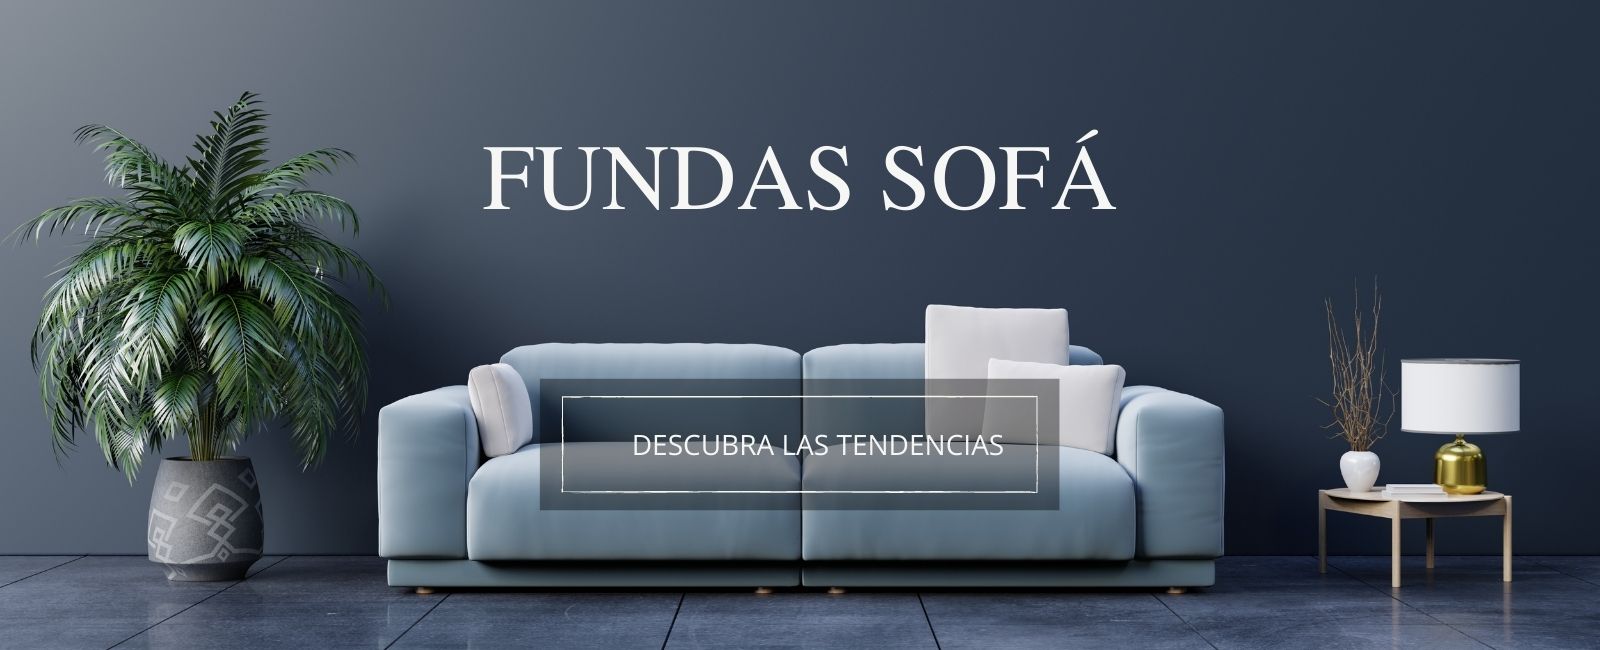 Fundas Moderna | Fundas de Sofá de Referencia Española